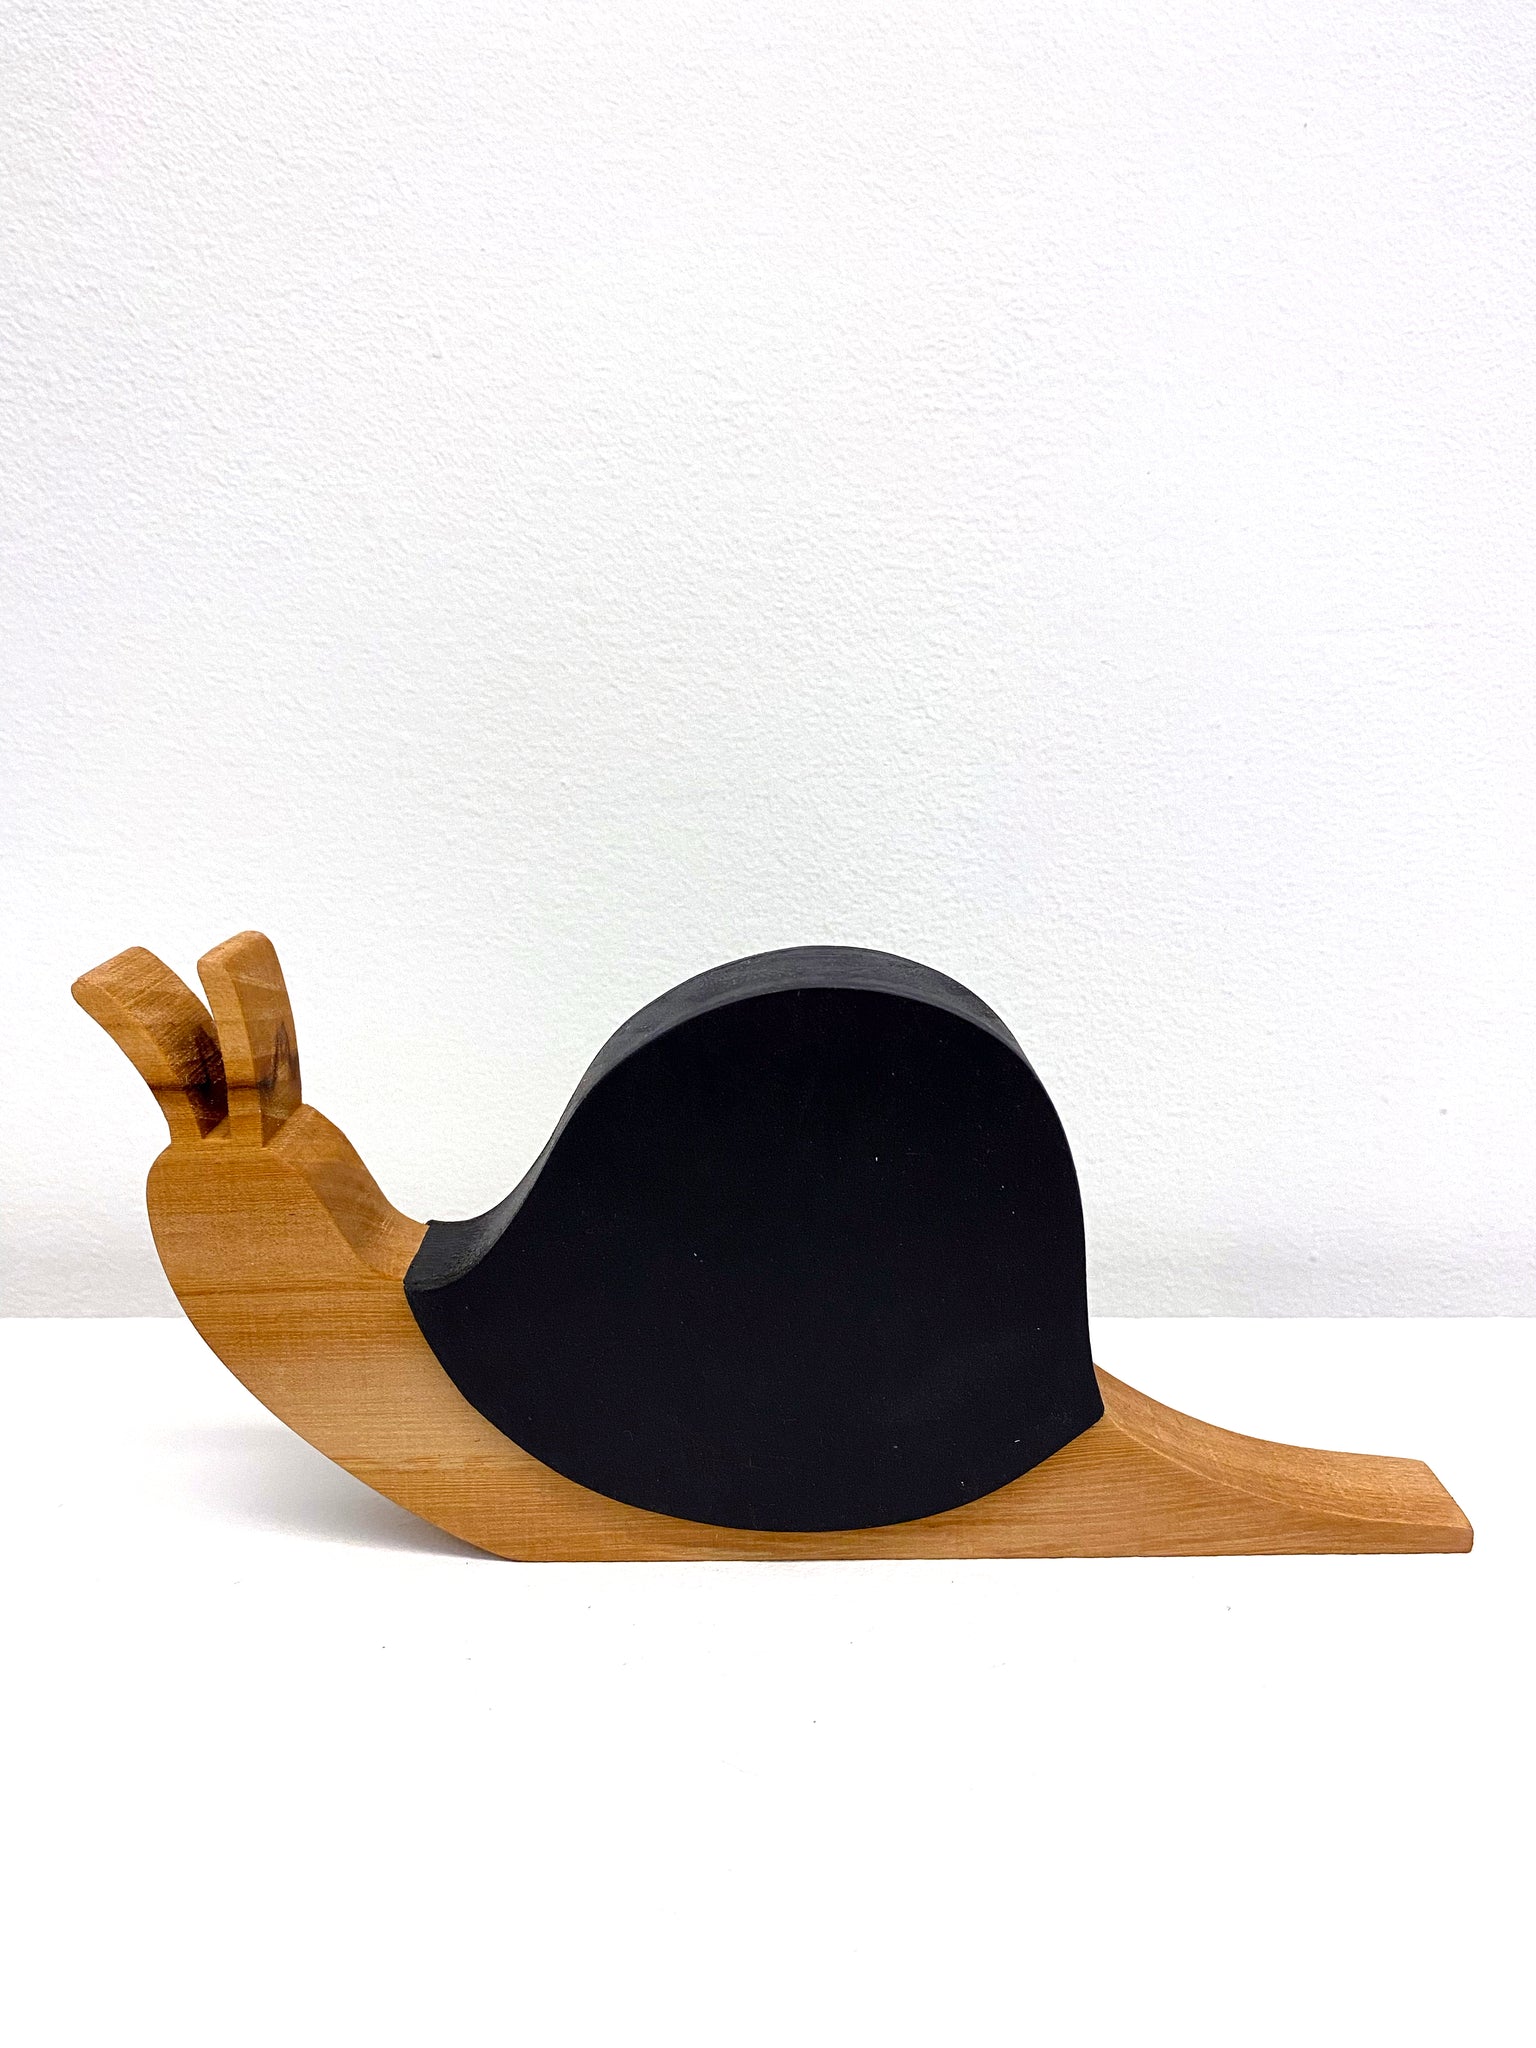 wooden sculpture of a snail